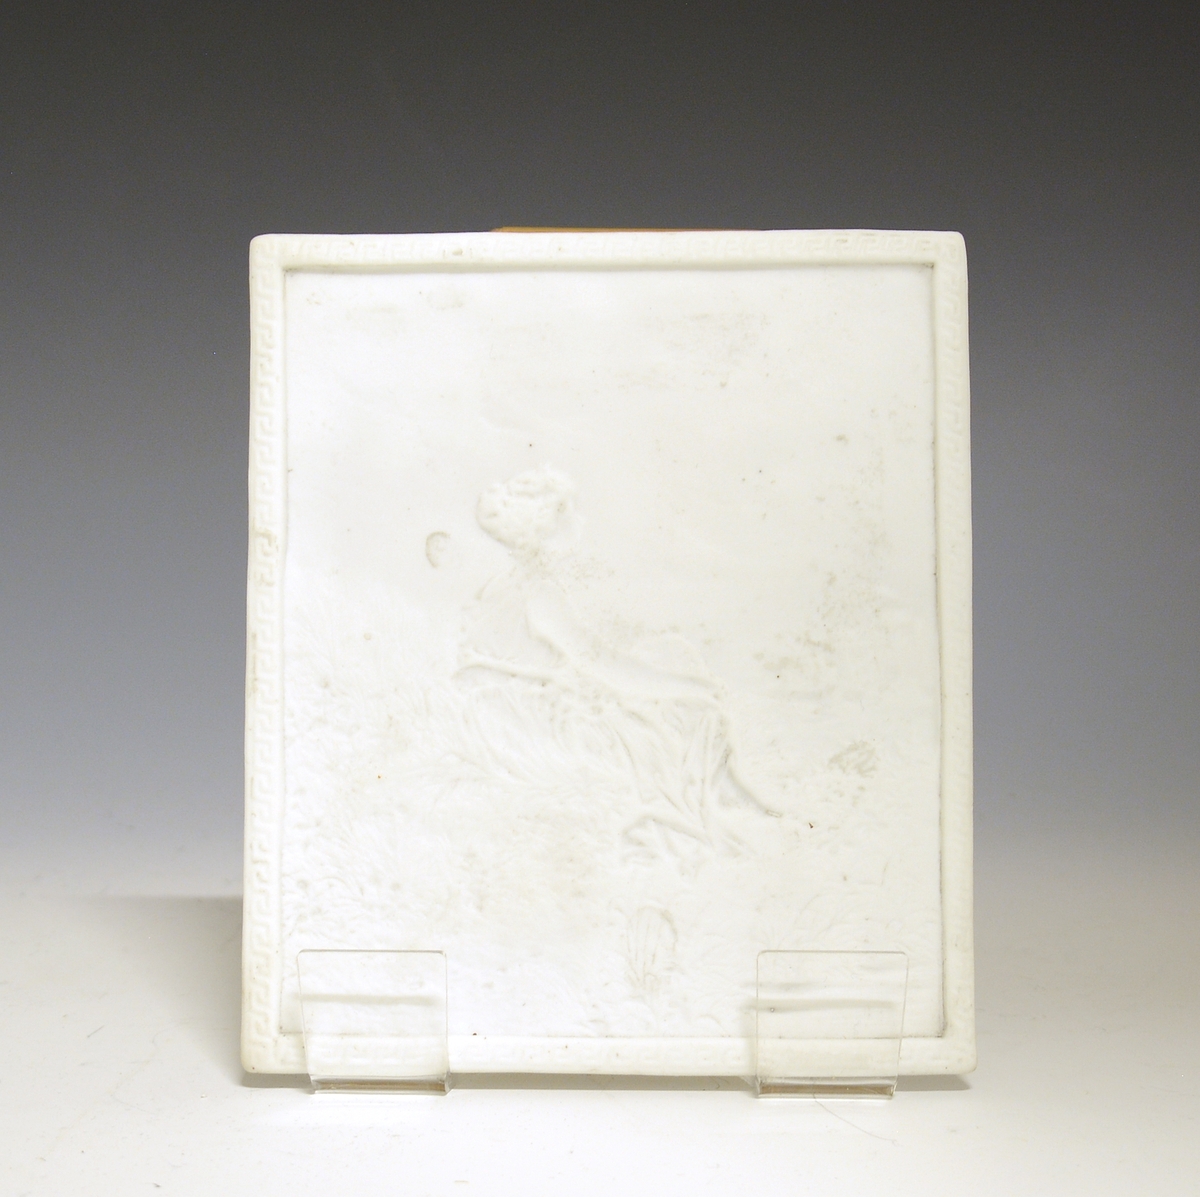 Prot: "Lysbilde" - tynn plate av porselen med smal ramme som har à la greque-bord. Motivet, en sittende kvinne i landskap, er delvis utført i bas-relieff. Uten glasur, uten mrk. og sign.